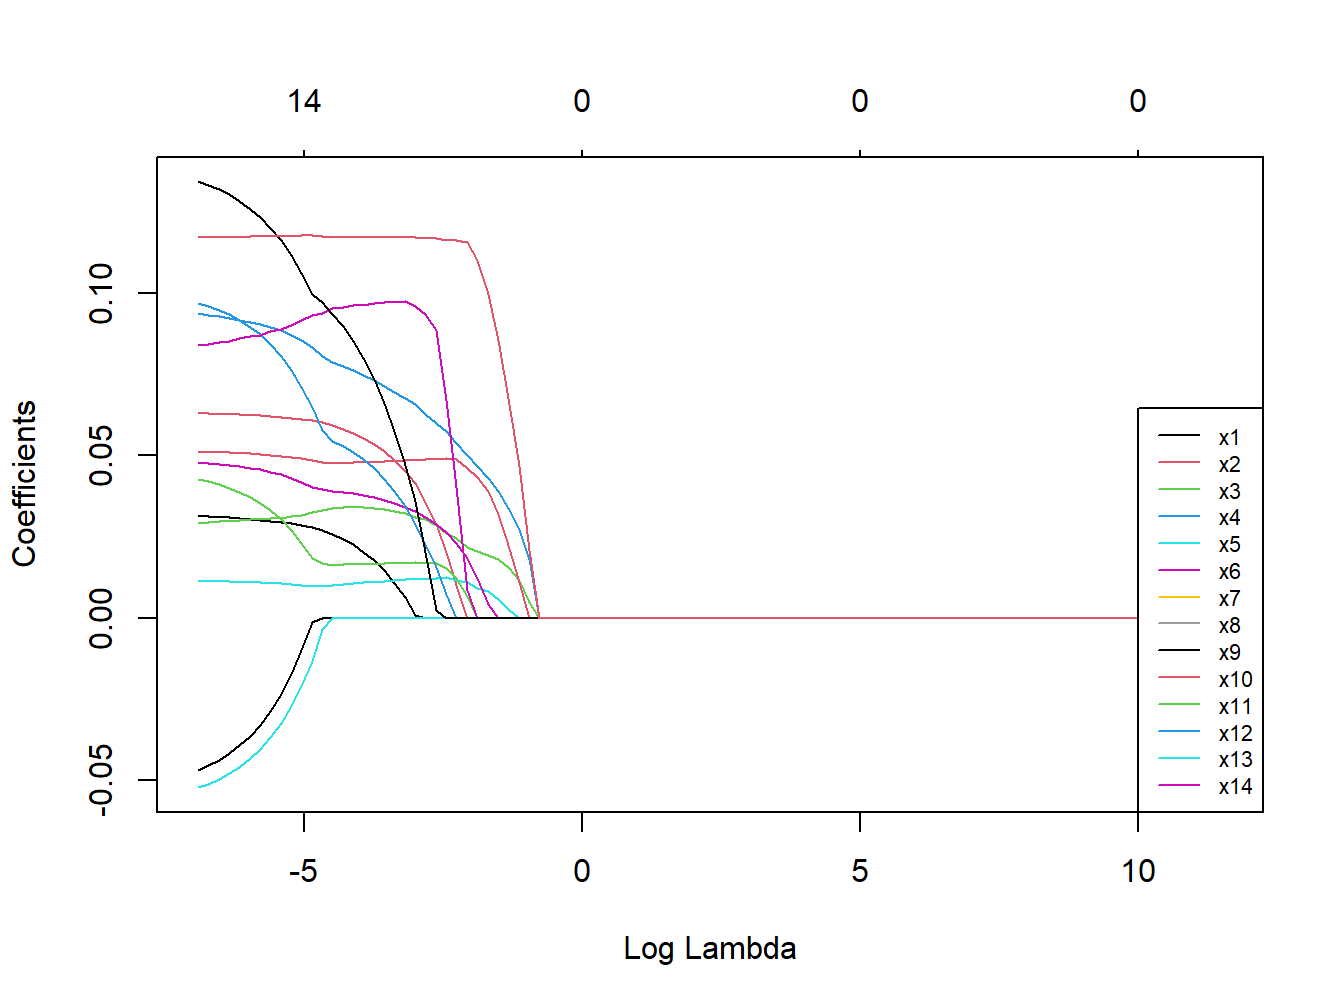 Coefficients trajectories for elastic net